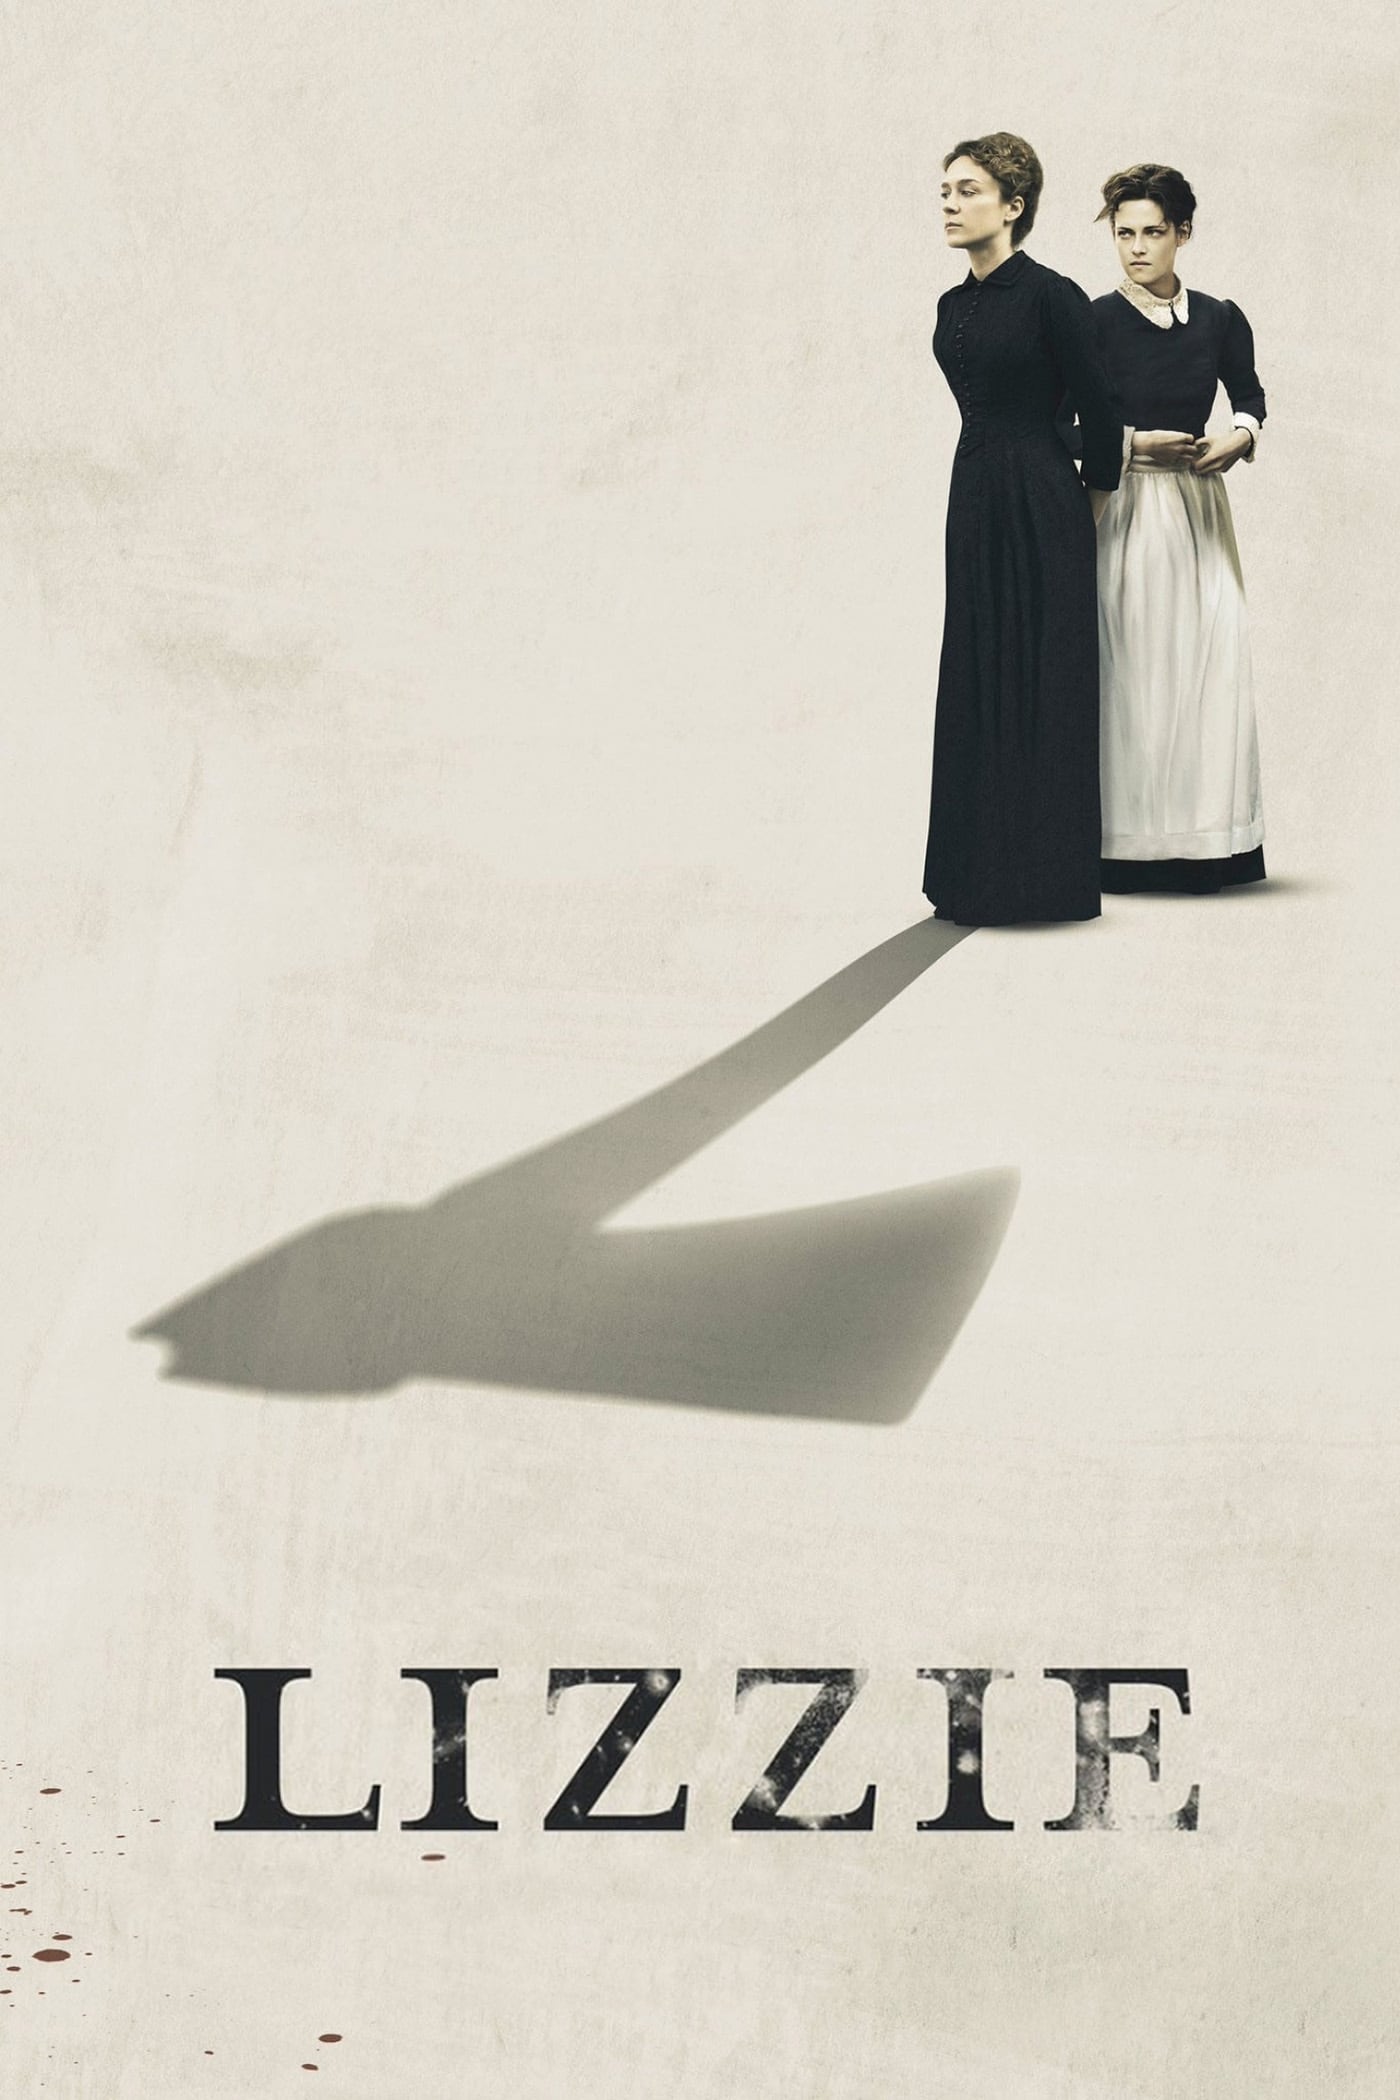 Lizzie film